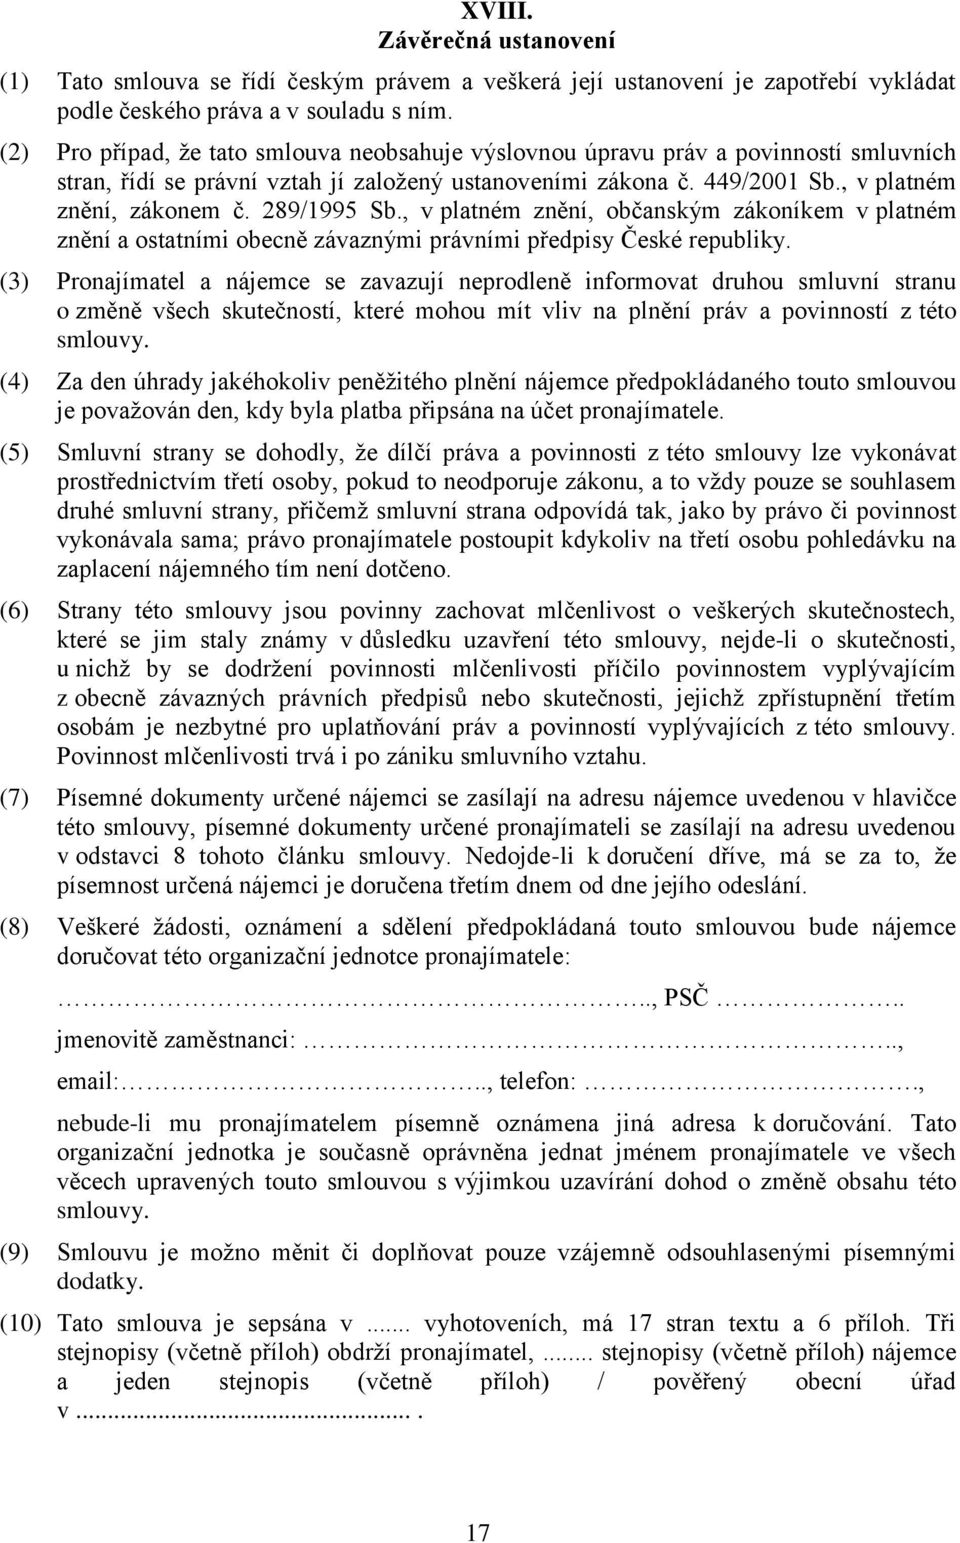 289/1995 Sb., v platném znění, občanským zákoníkem v platném znění a ostatními obecně závaznými právními předpisy České republiky.